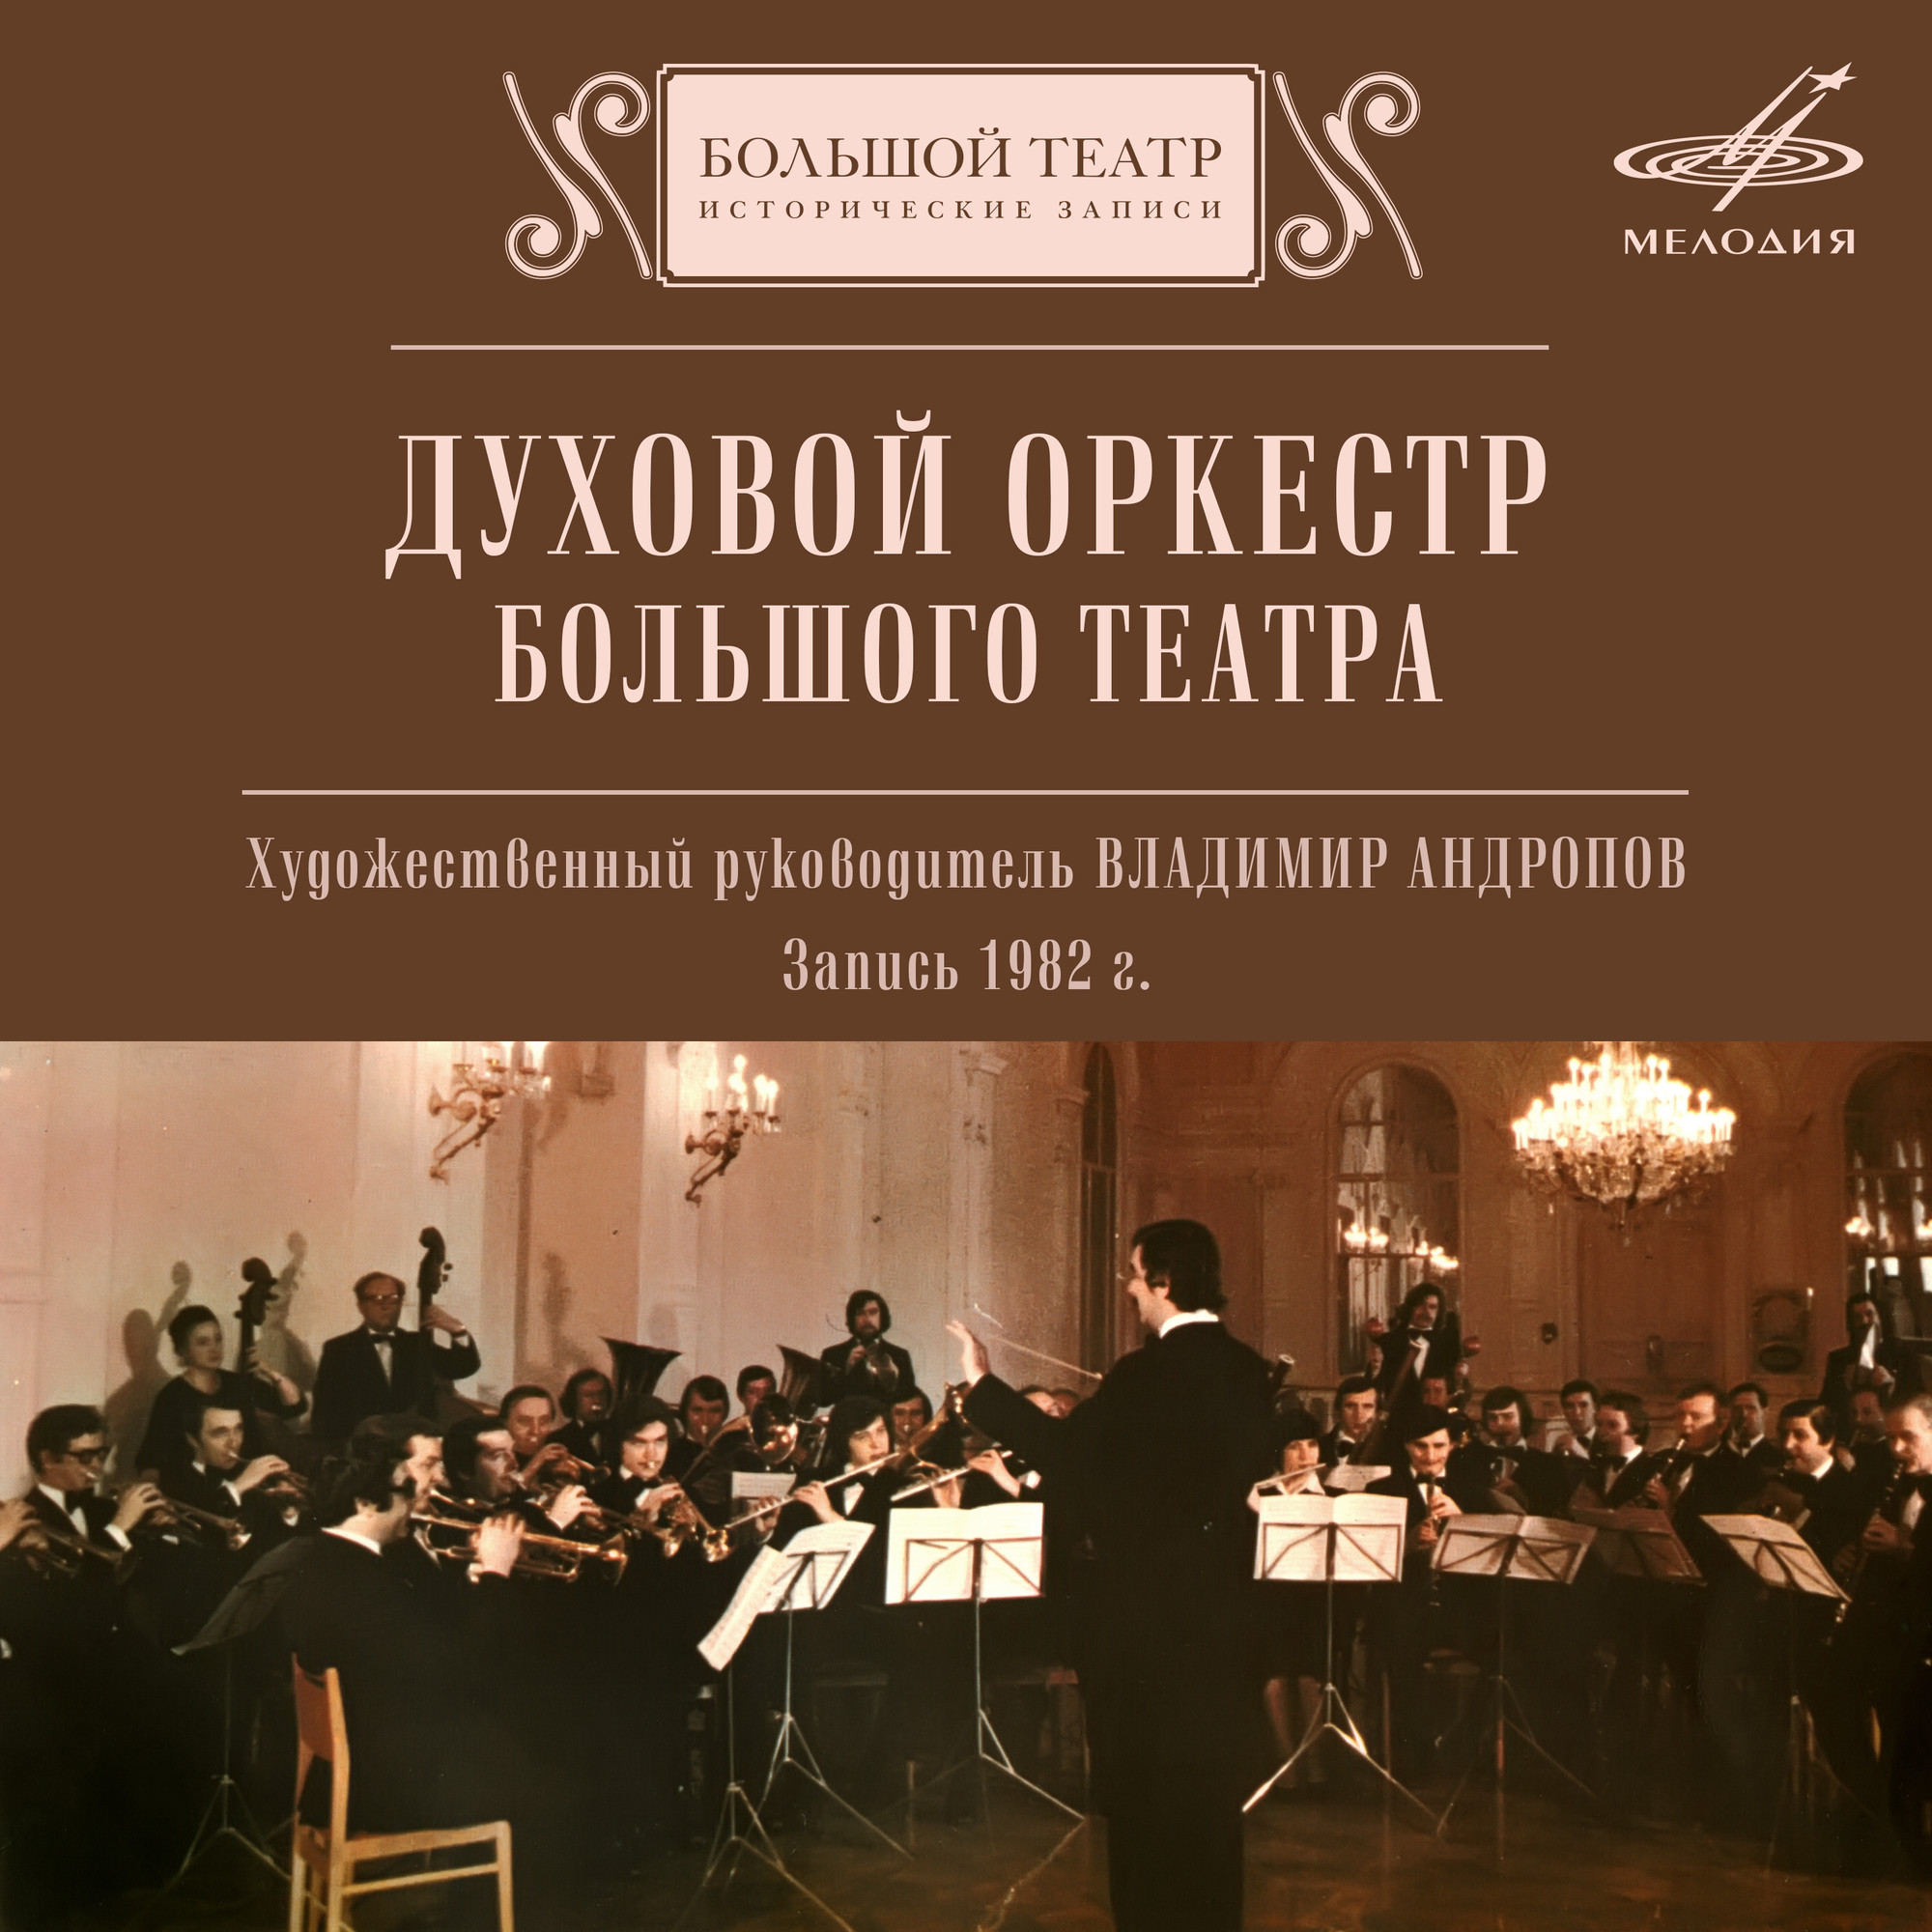 Духовой оркестр Большого театра